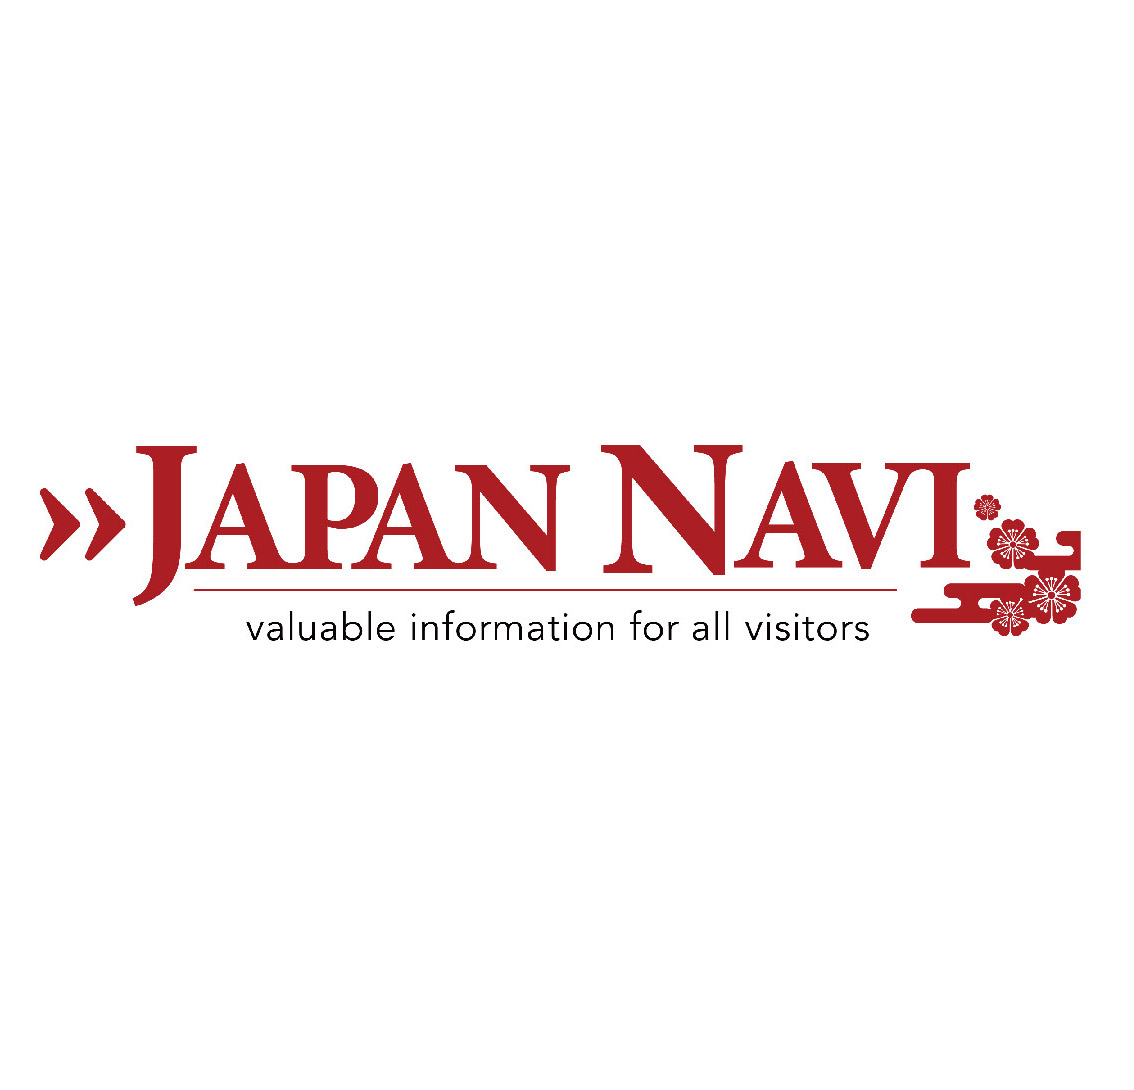 Japan Navi Group